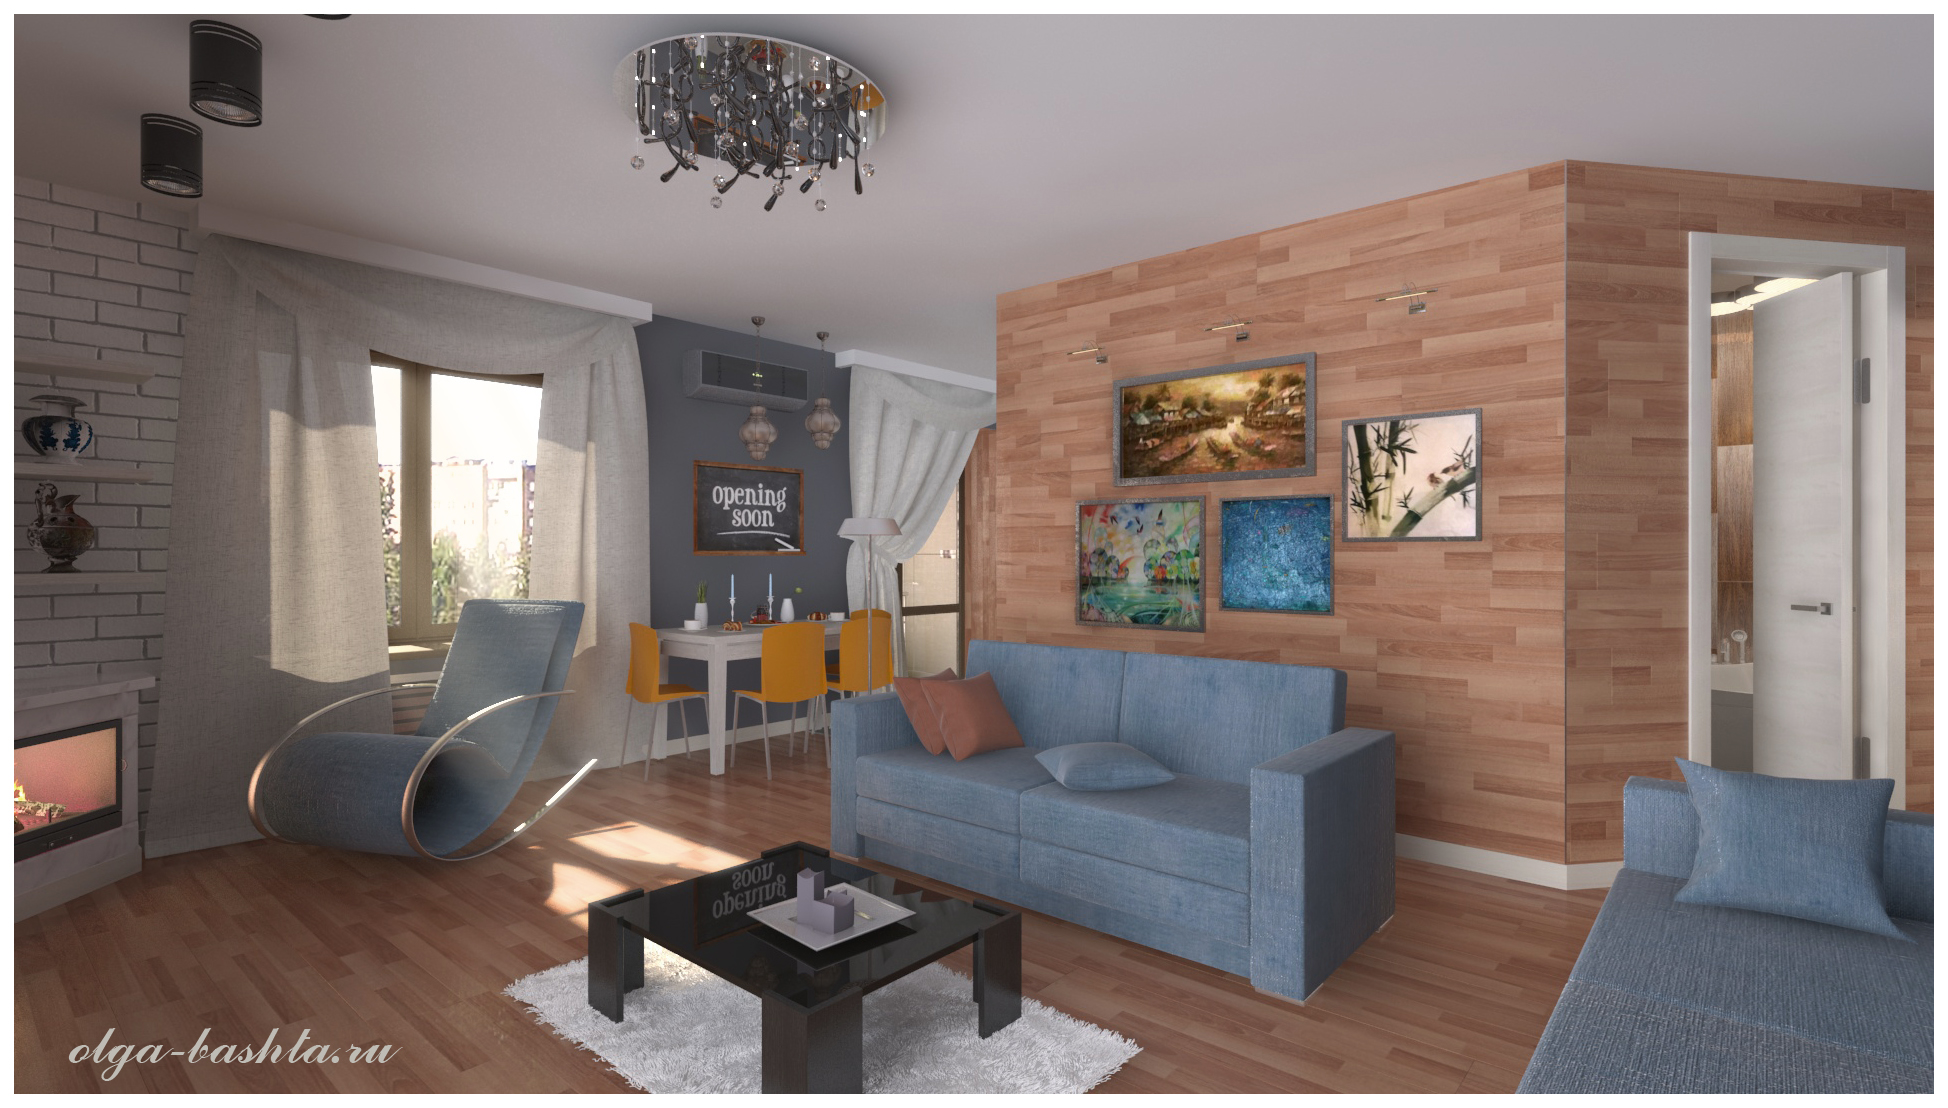 Sala de estar com lareira em 3d max vray 3.0 imagem